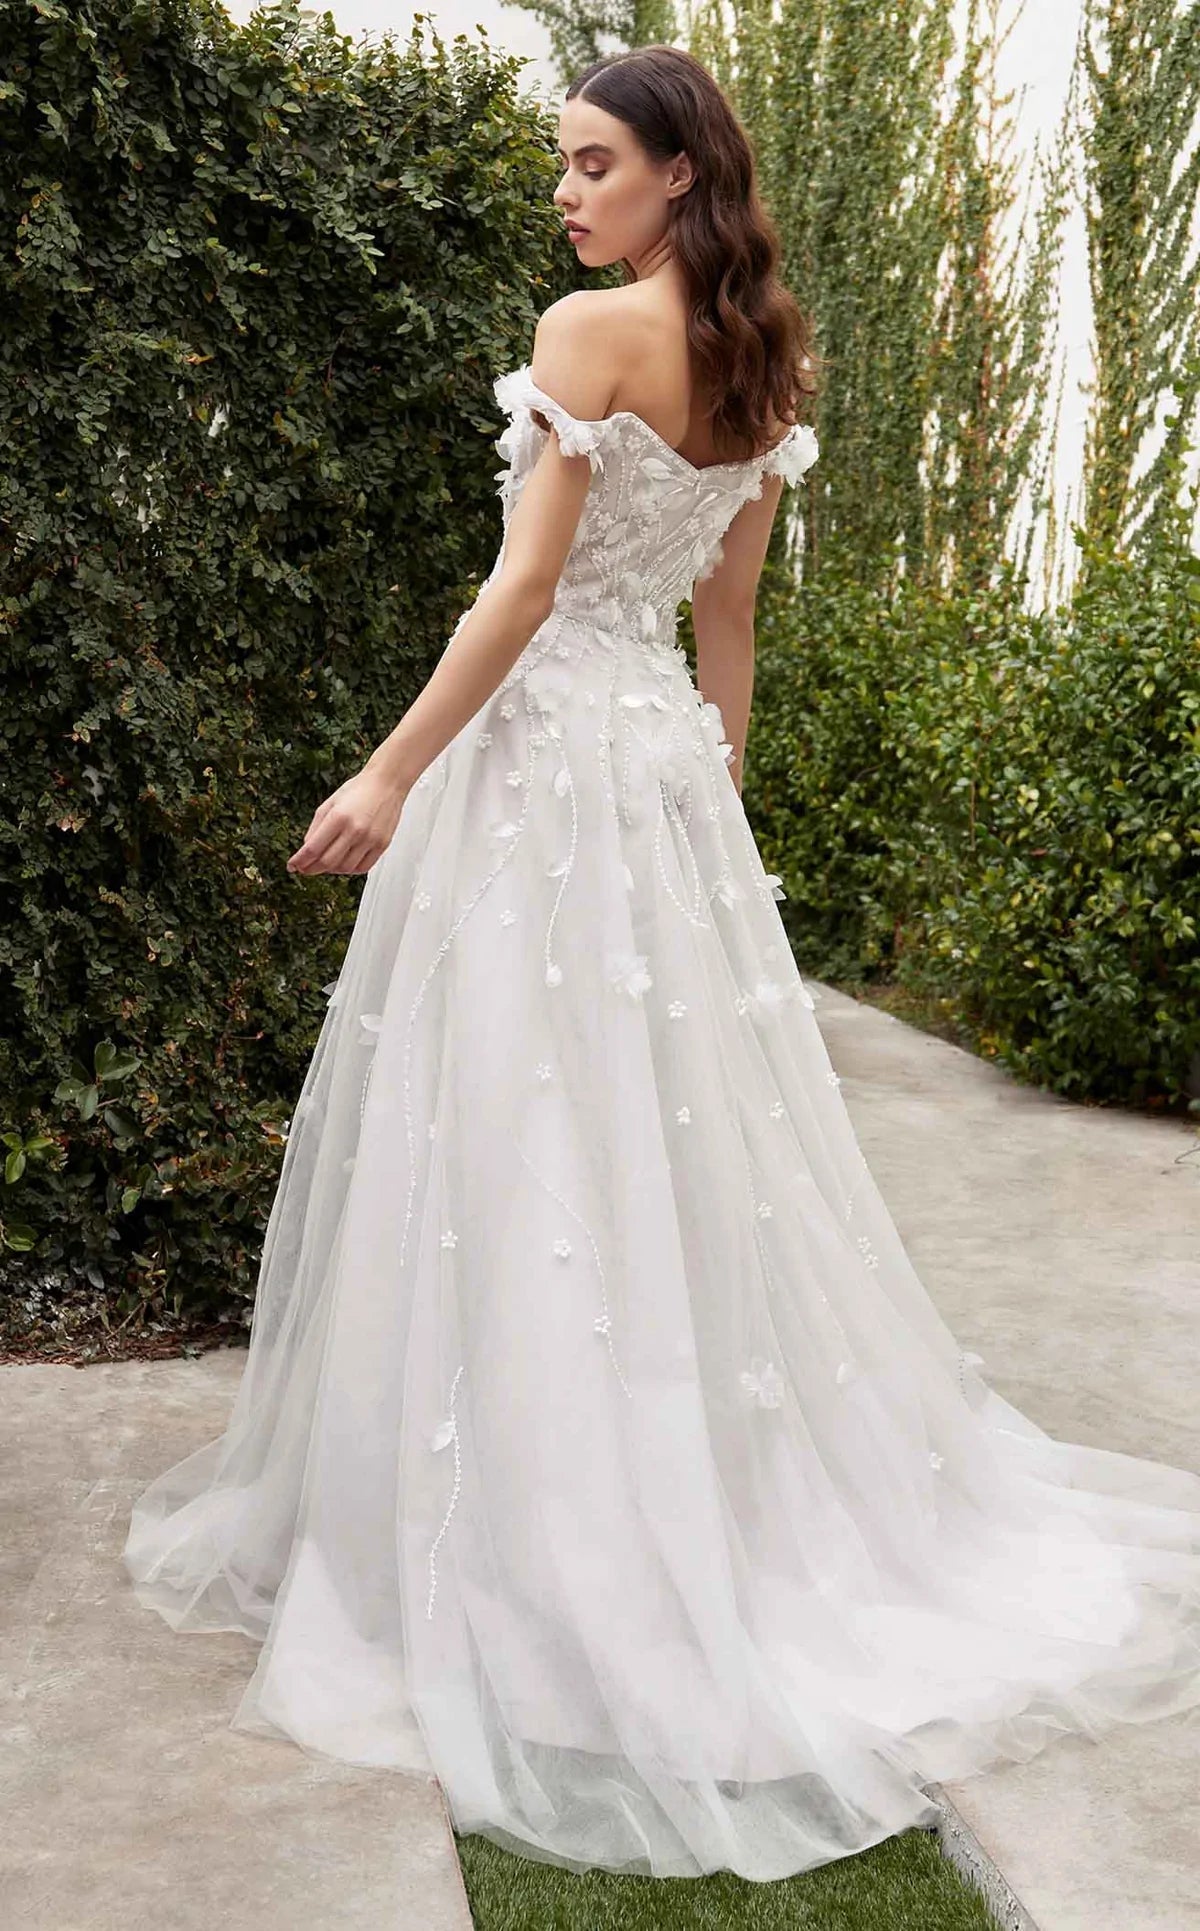 Hanna Off Shoulder Floral Applique Slit Wedding Dress: Off White - Bella and Bloom Boutique